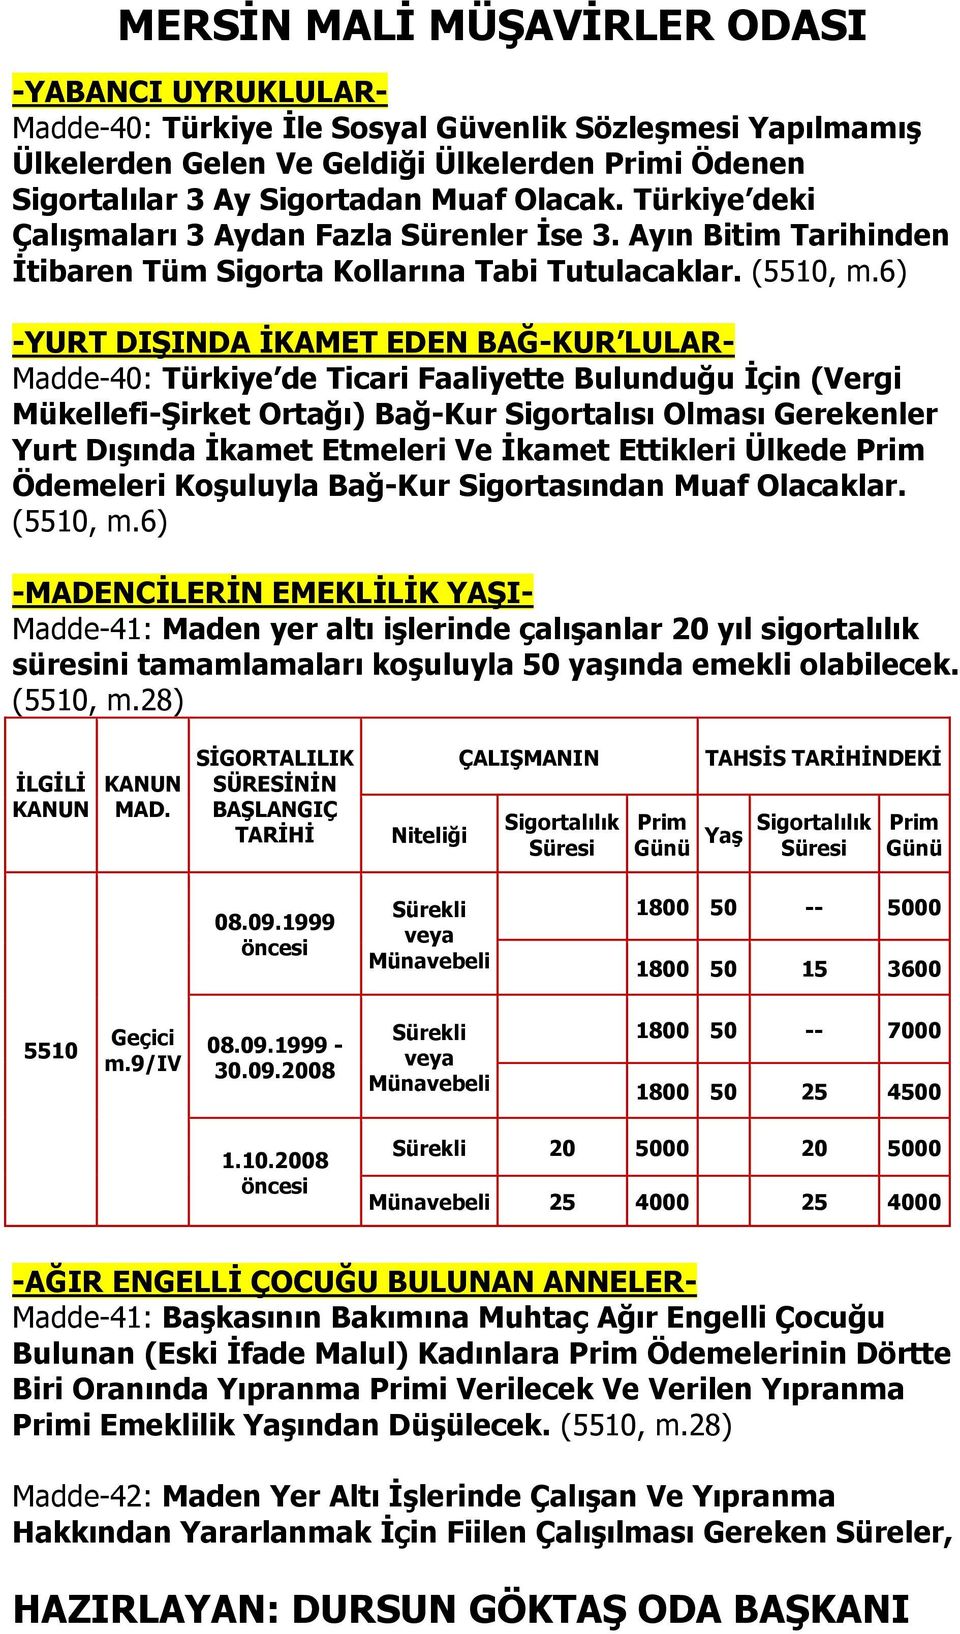 6) -YURT DIŞINDA İKAMET EDEN BAĞ-KUR LULAR- Madde-40: Türkiye de Ticari Faaliyette Bulunduğu İçin (Vergi Mükellefi-Şirket Ortağı) Bağ-Kur Sigortalısı Olması Gerekenler Yurt Dışında İkamet Etmeleri Ve